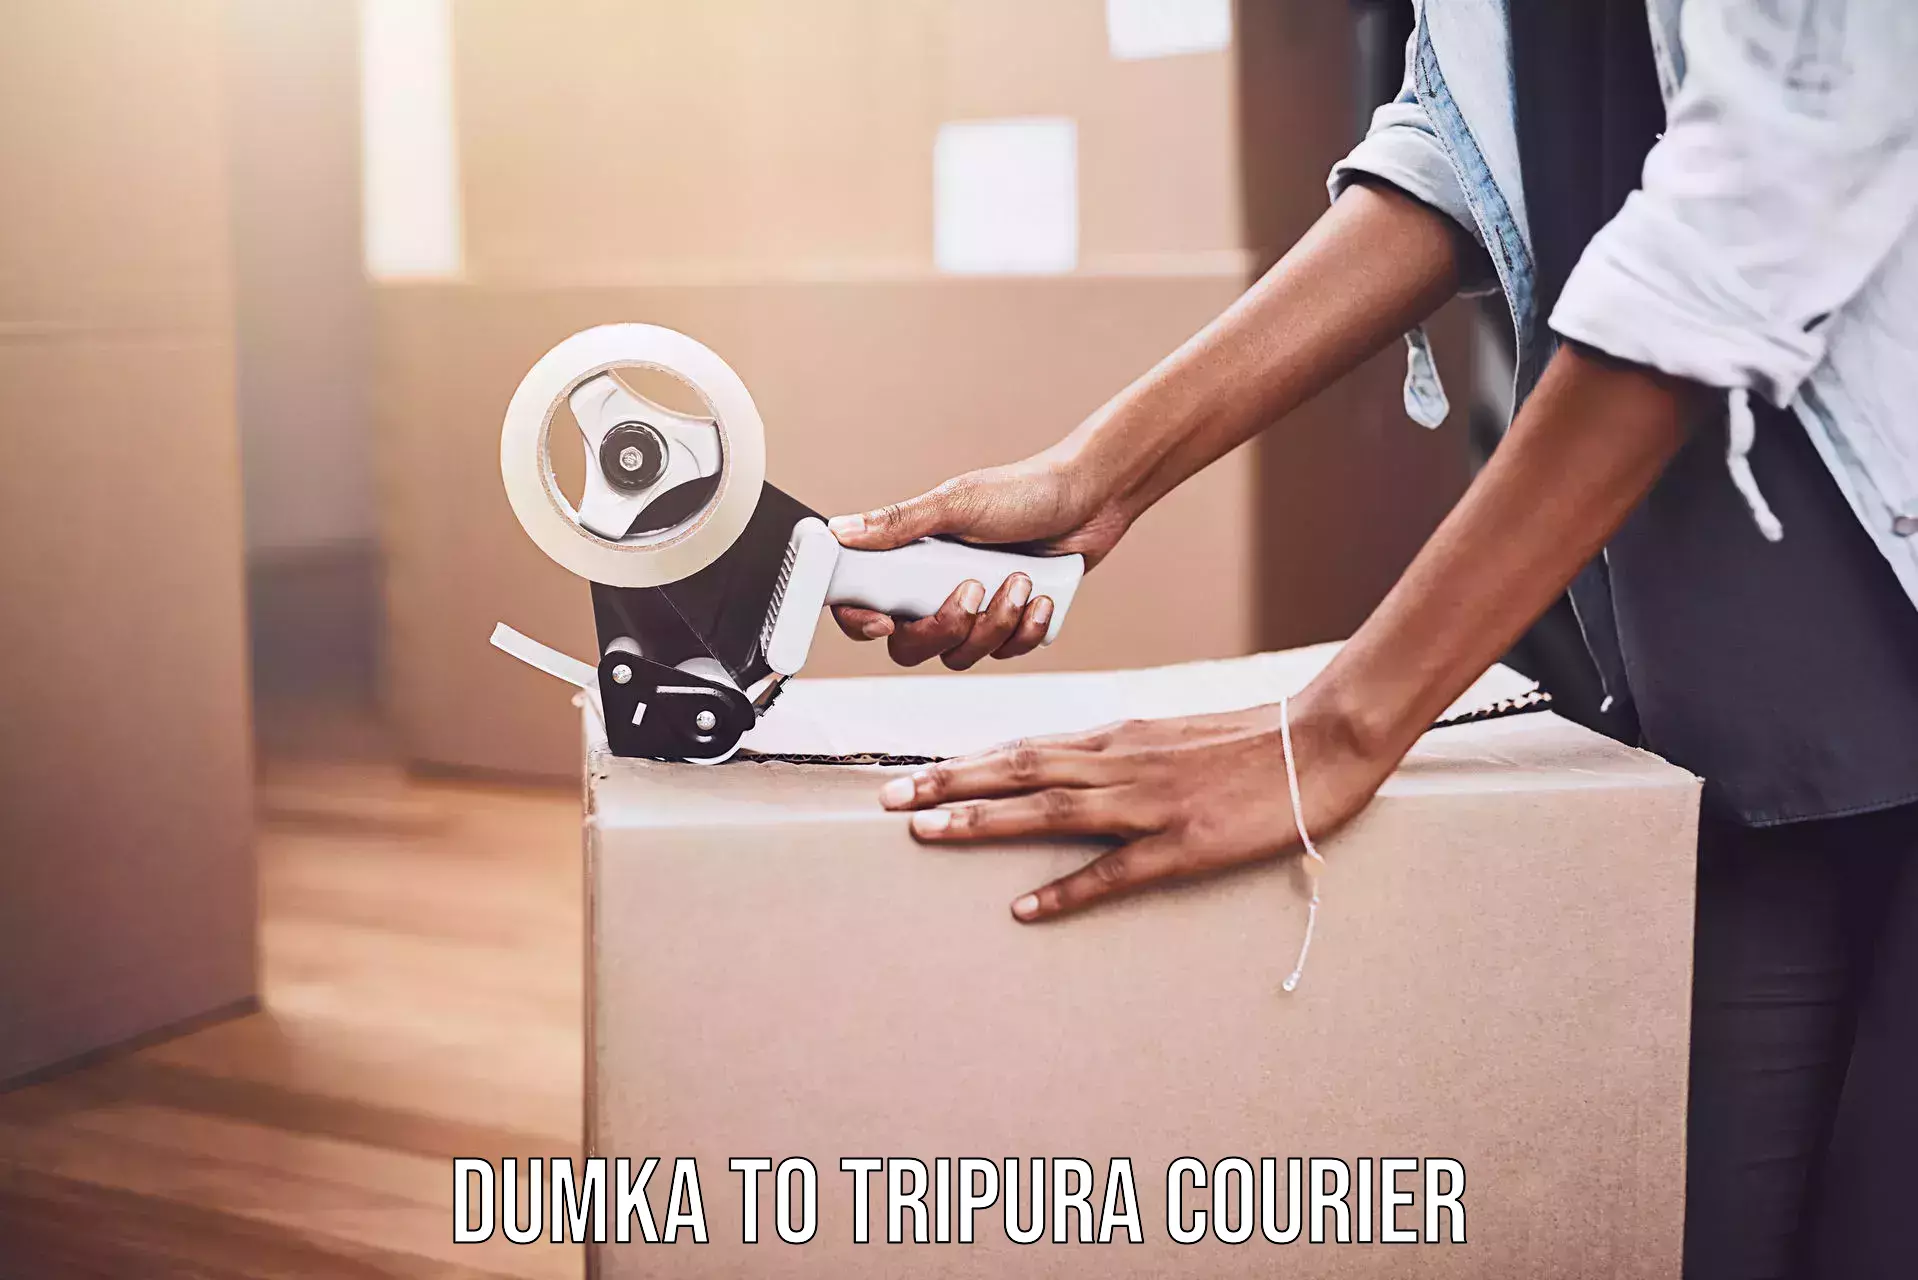 Nationwide delivery network Dumka to IIIT Agartala